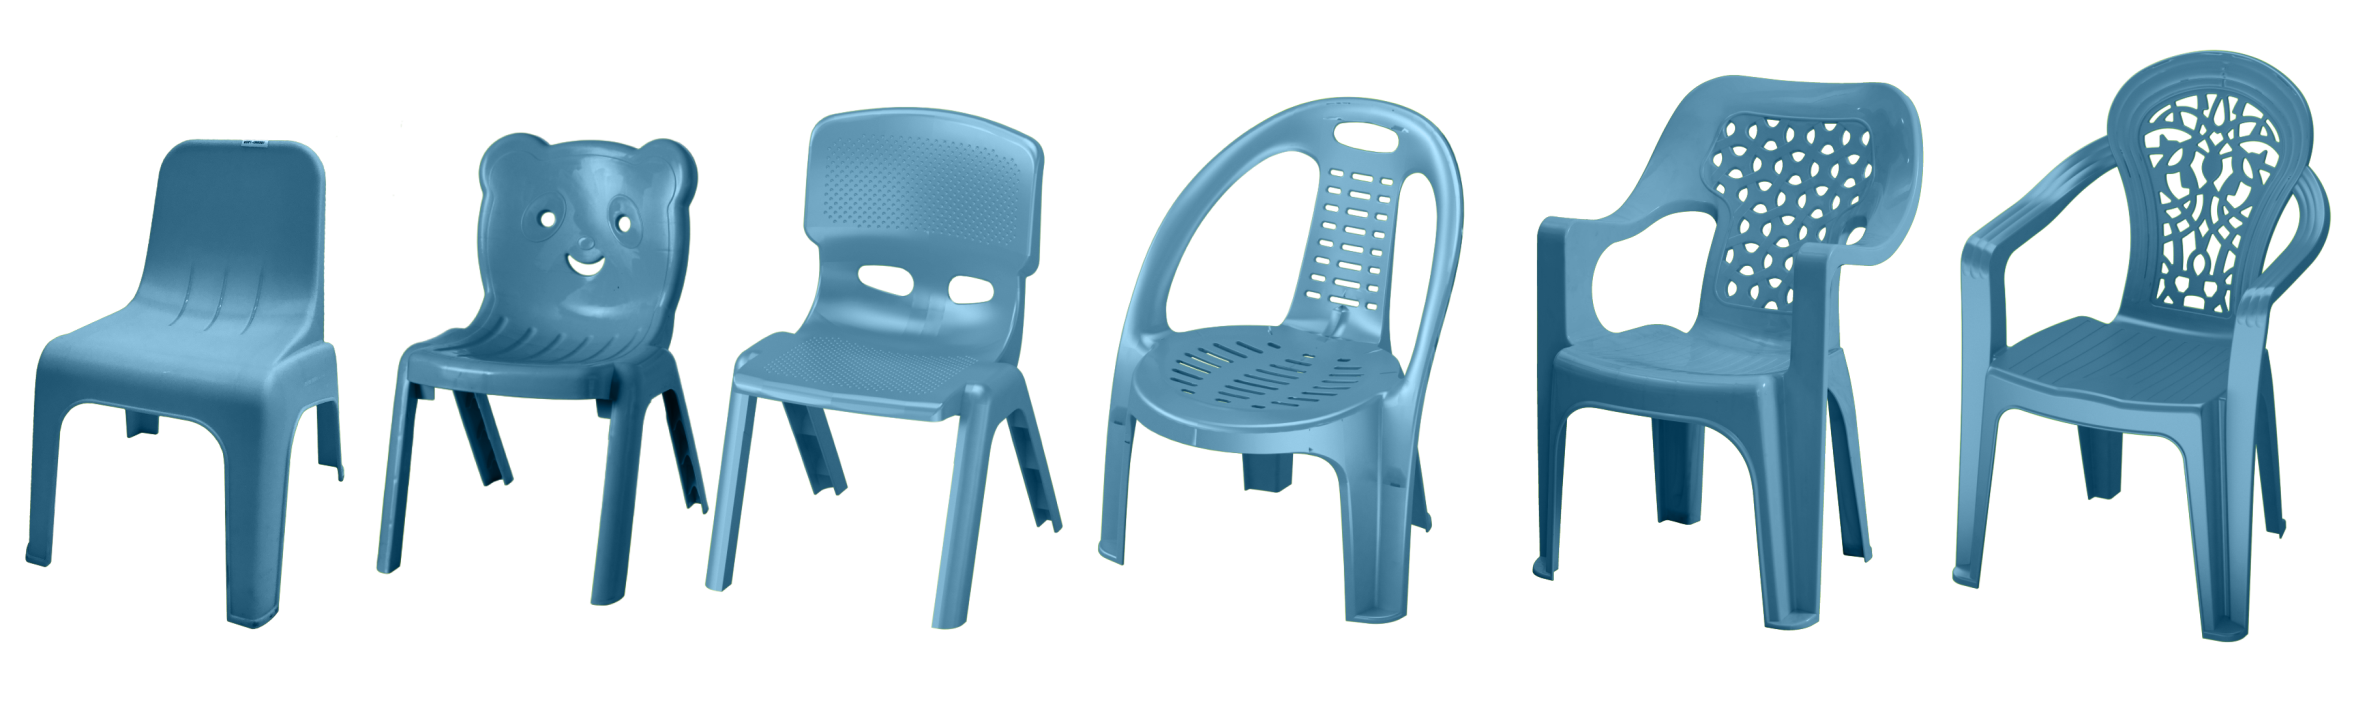 椅子模具18